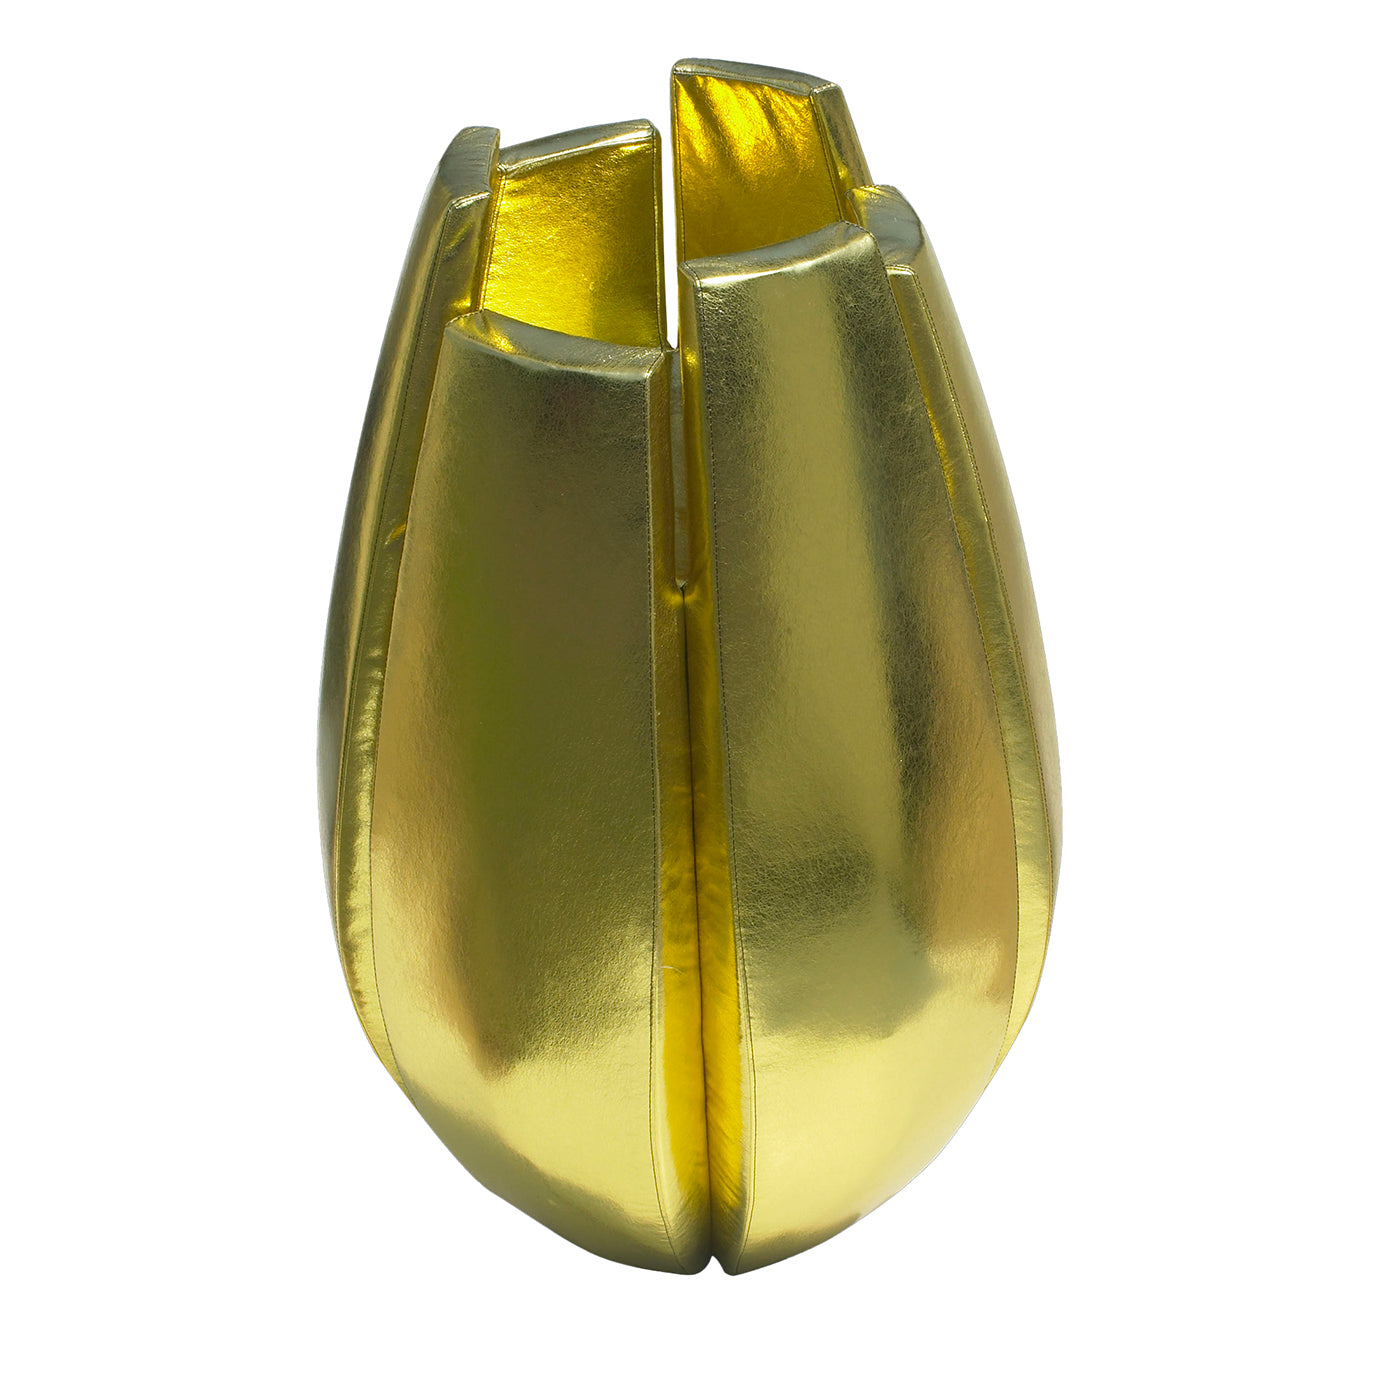 Vase en or à la citrouille - Vue principale